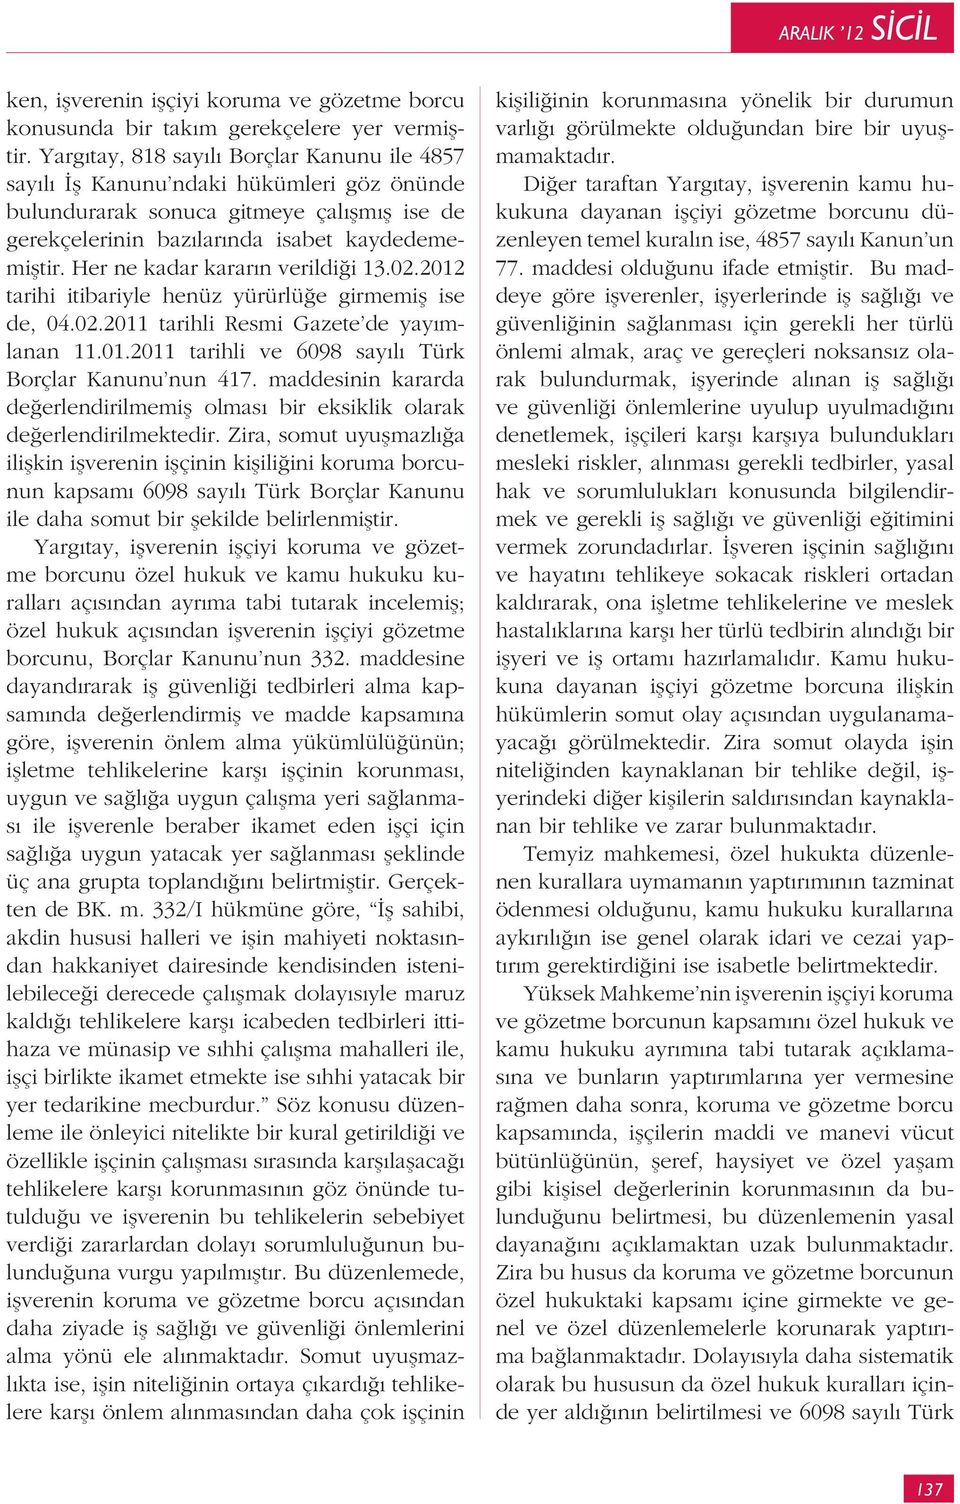 Her ne kadar karar n verildi i 13.02.2012 tarihi itibariyle henüz yürürlü e girmemi ise de, 04.02.2011 tarihli Resmi Gazete de yay mlanan 11.01.2011 tarihli ve 6098 say l Türk Borçlar Kanunu nun 417.